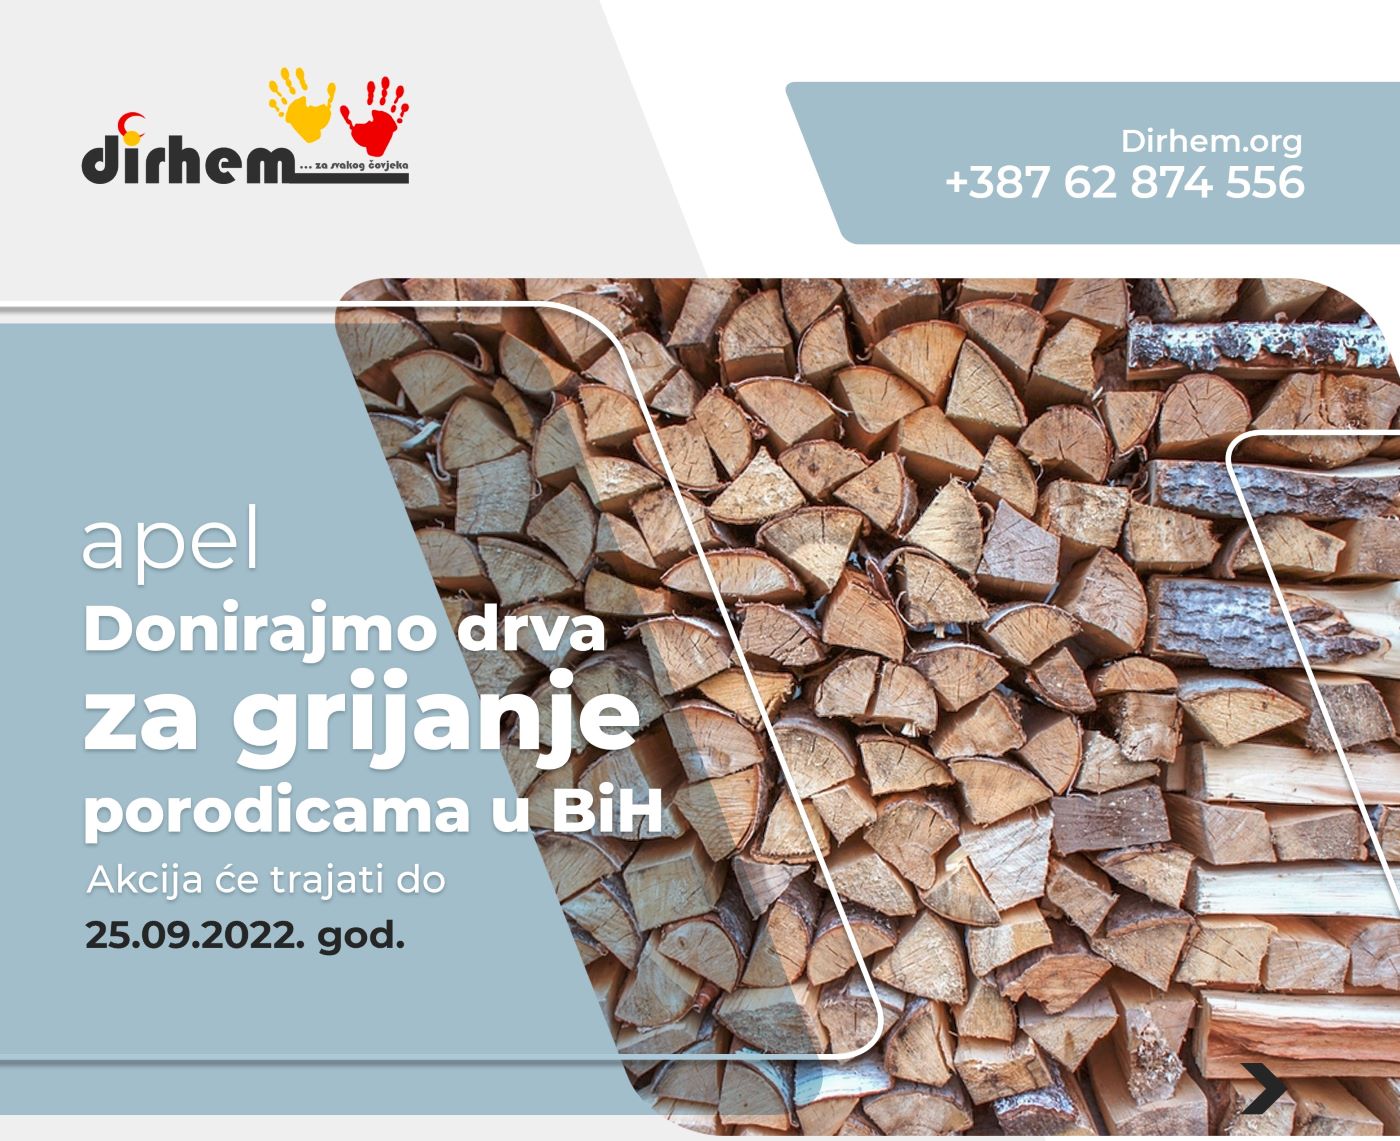 You are currently viewing APEL: Donirajmo drva za grijanje porodicama u BiH